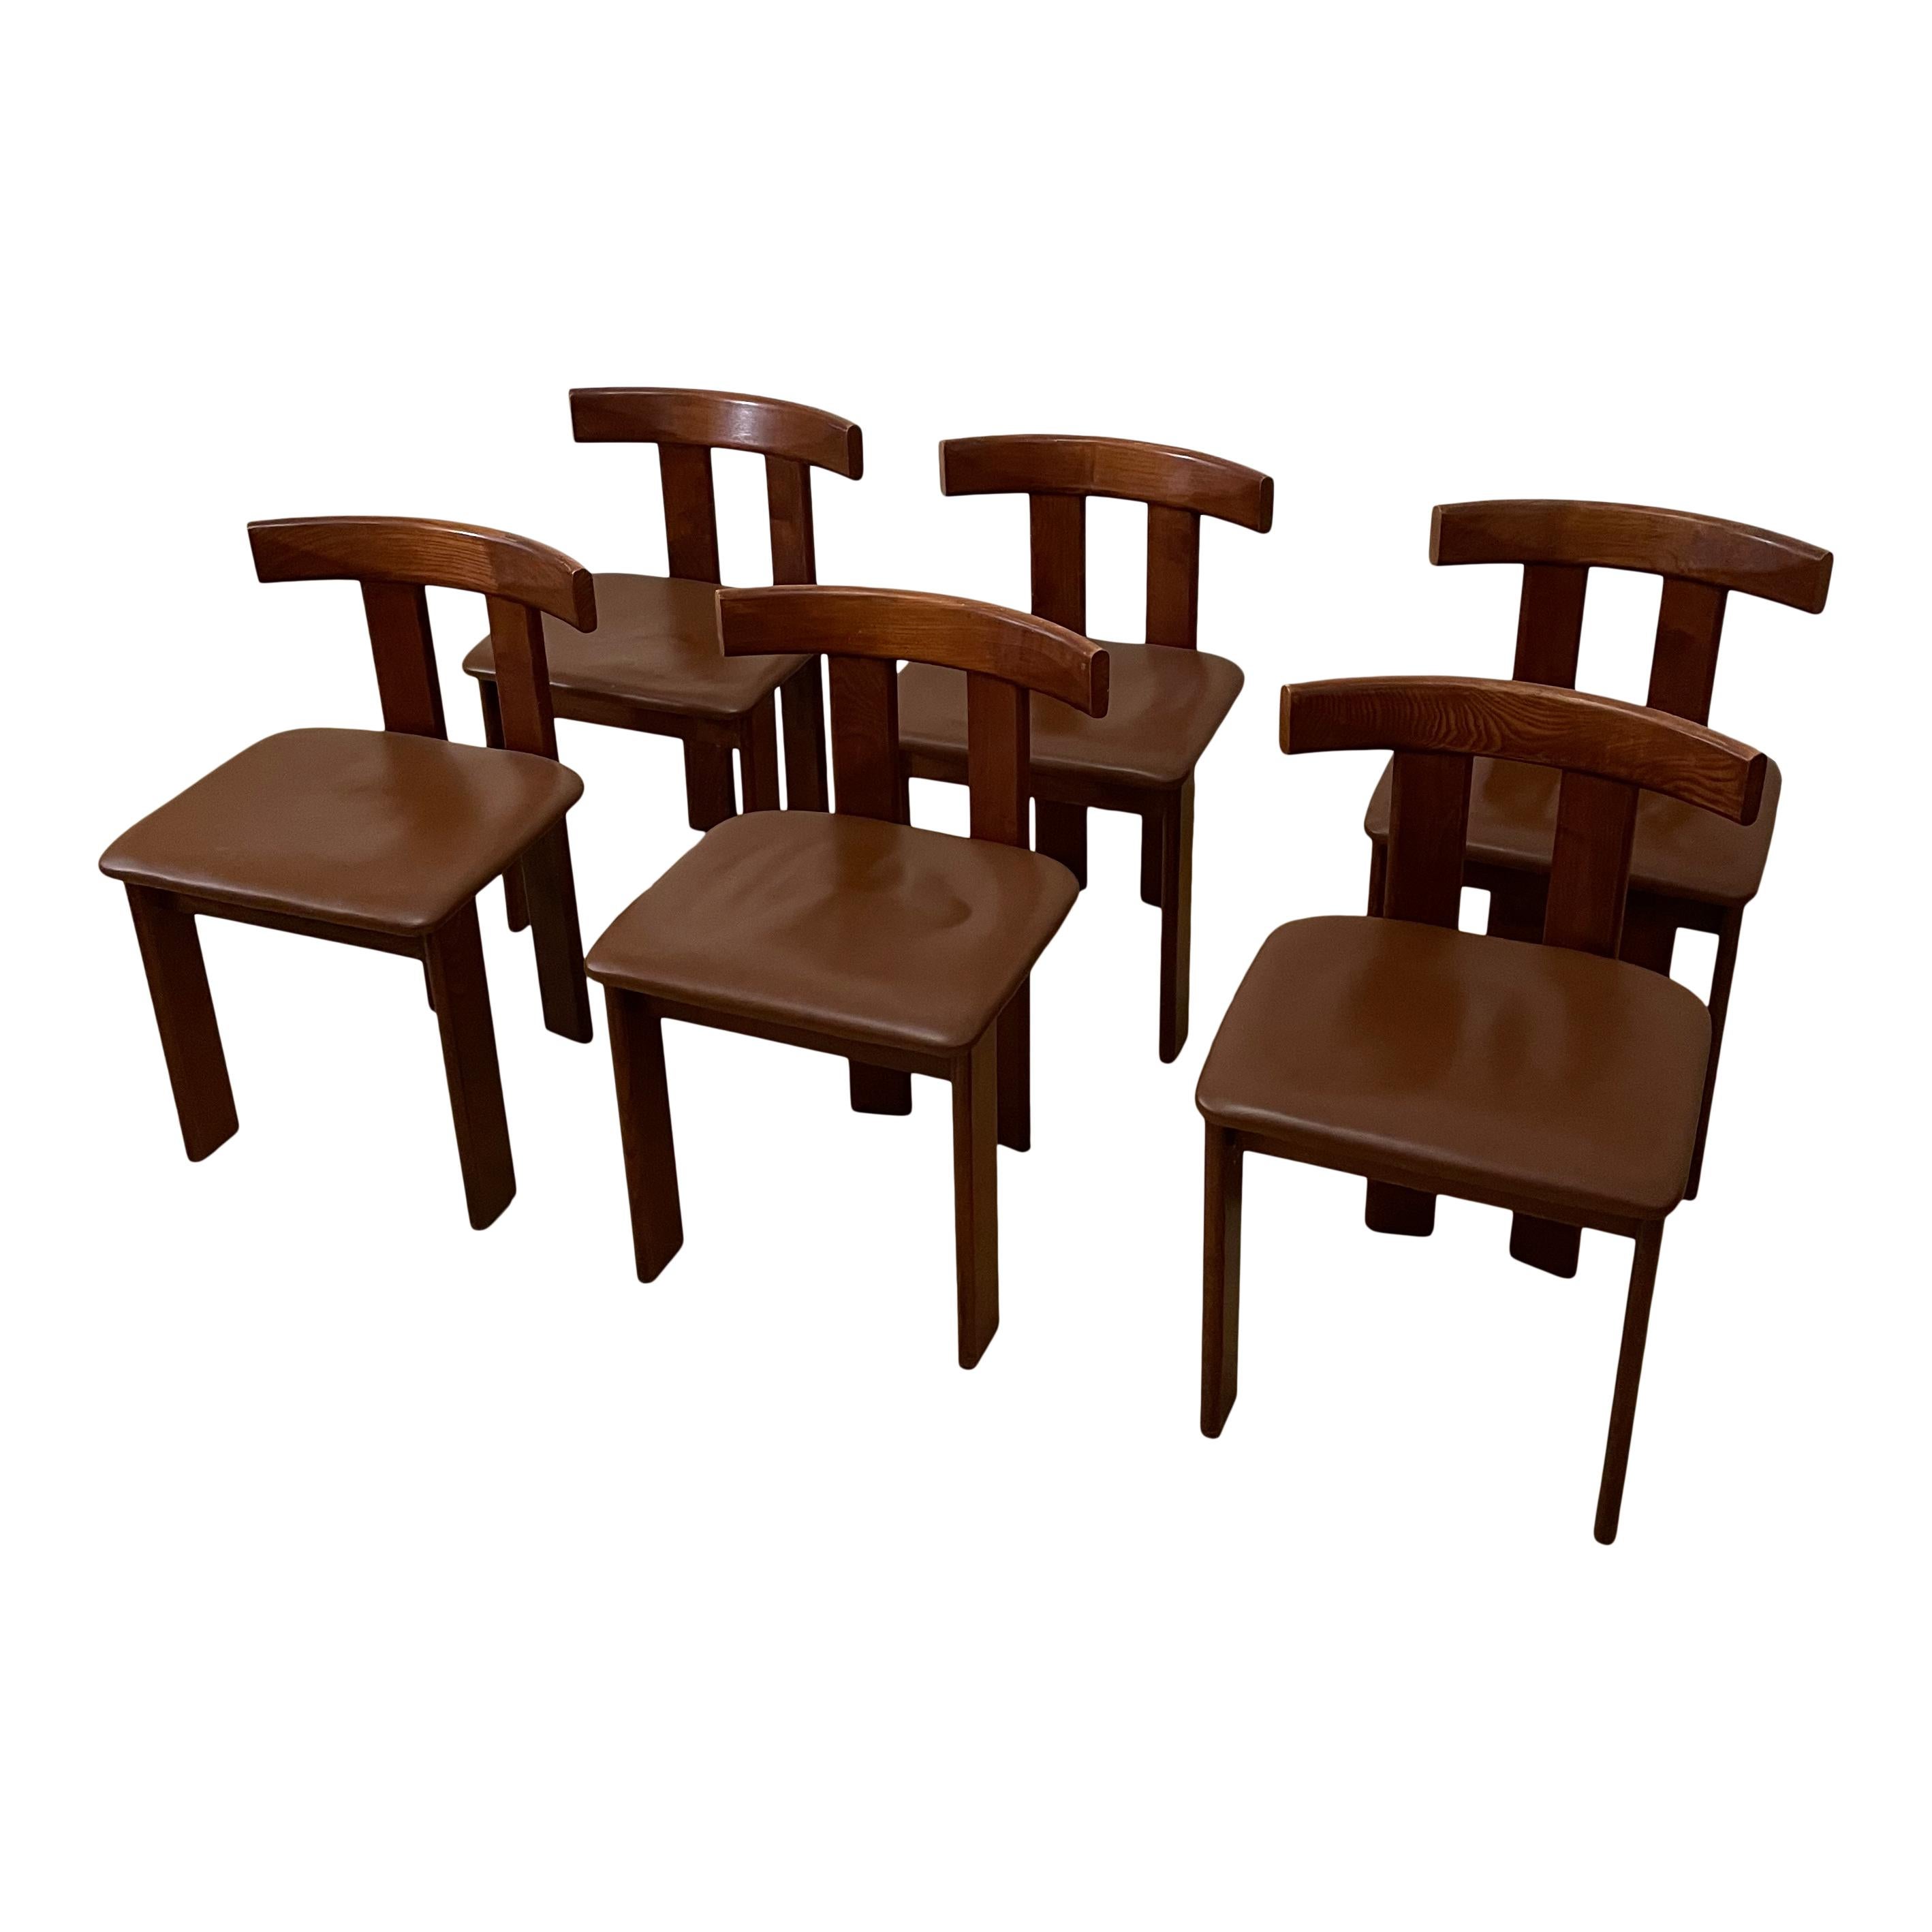 Dieses Set aus sechs Esszimmerstühlen wurde in den 1970er Jahren in Italien entworfen und hergestellt. Es zeichnet sich durch eine Struktur aus Nussbaumholz und Sitzflächen aus Leder aus. 
Diese Stühle befinden sich in einem ausgezeichneten Zustand